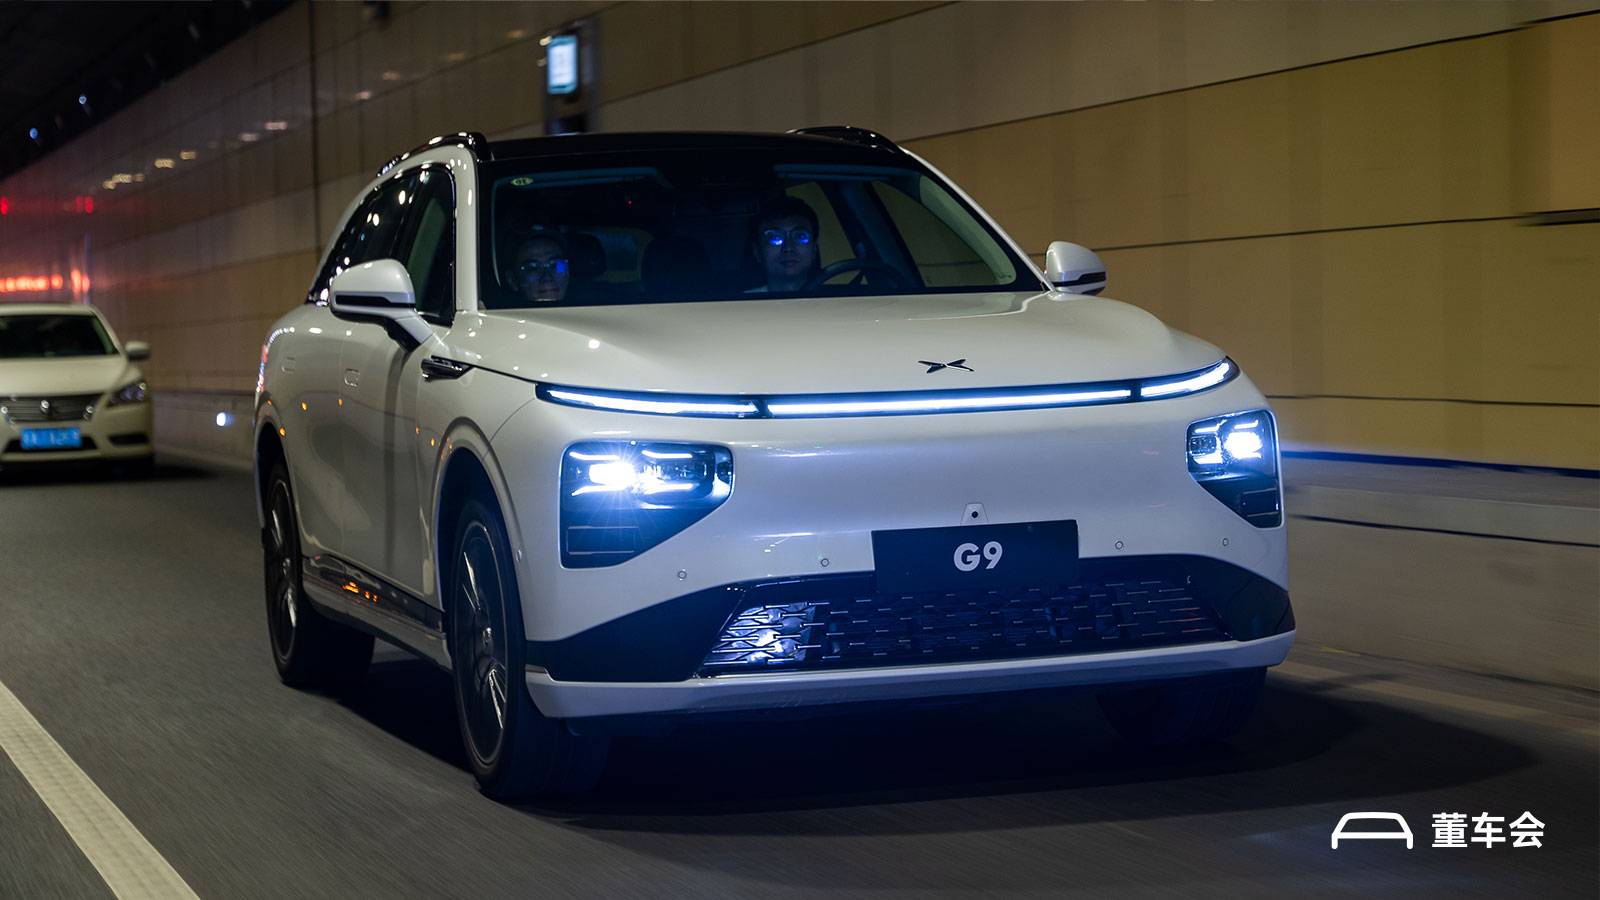 g92 1 - Test drive dinamico Xiaopeng G9: il miglior SUV entro 500.000 yuan, concordo solo con la metà